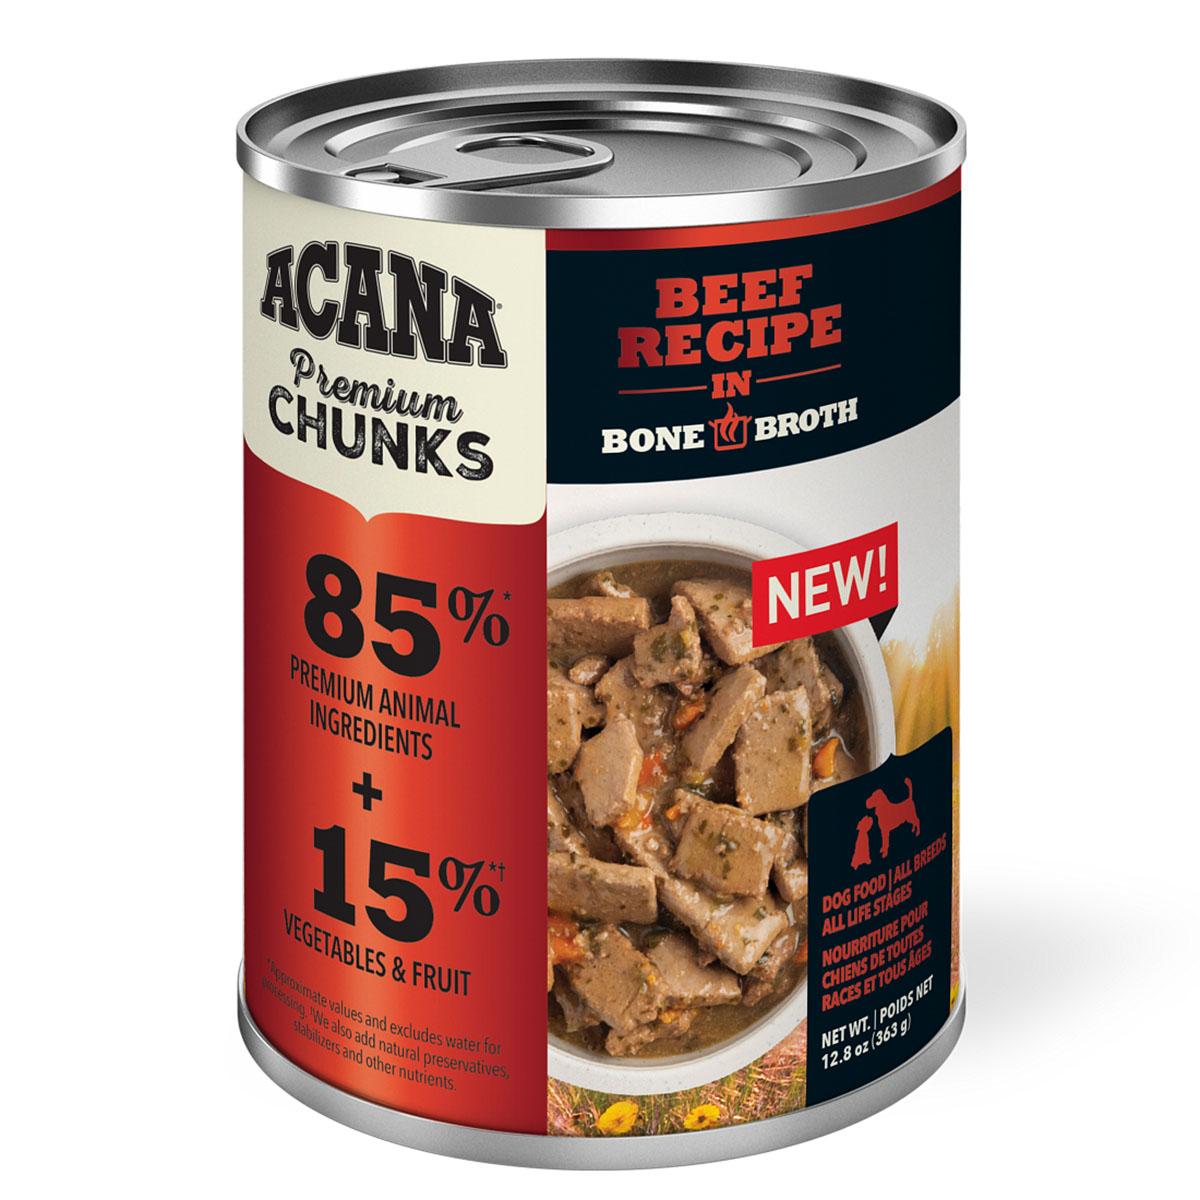 Acana Premium Chunks Beef Recipe in Bone Broth Canned Dog Food 